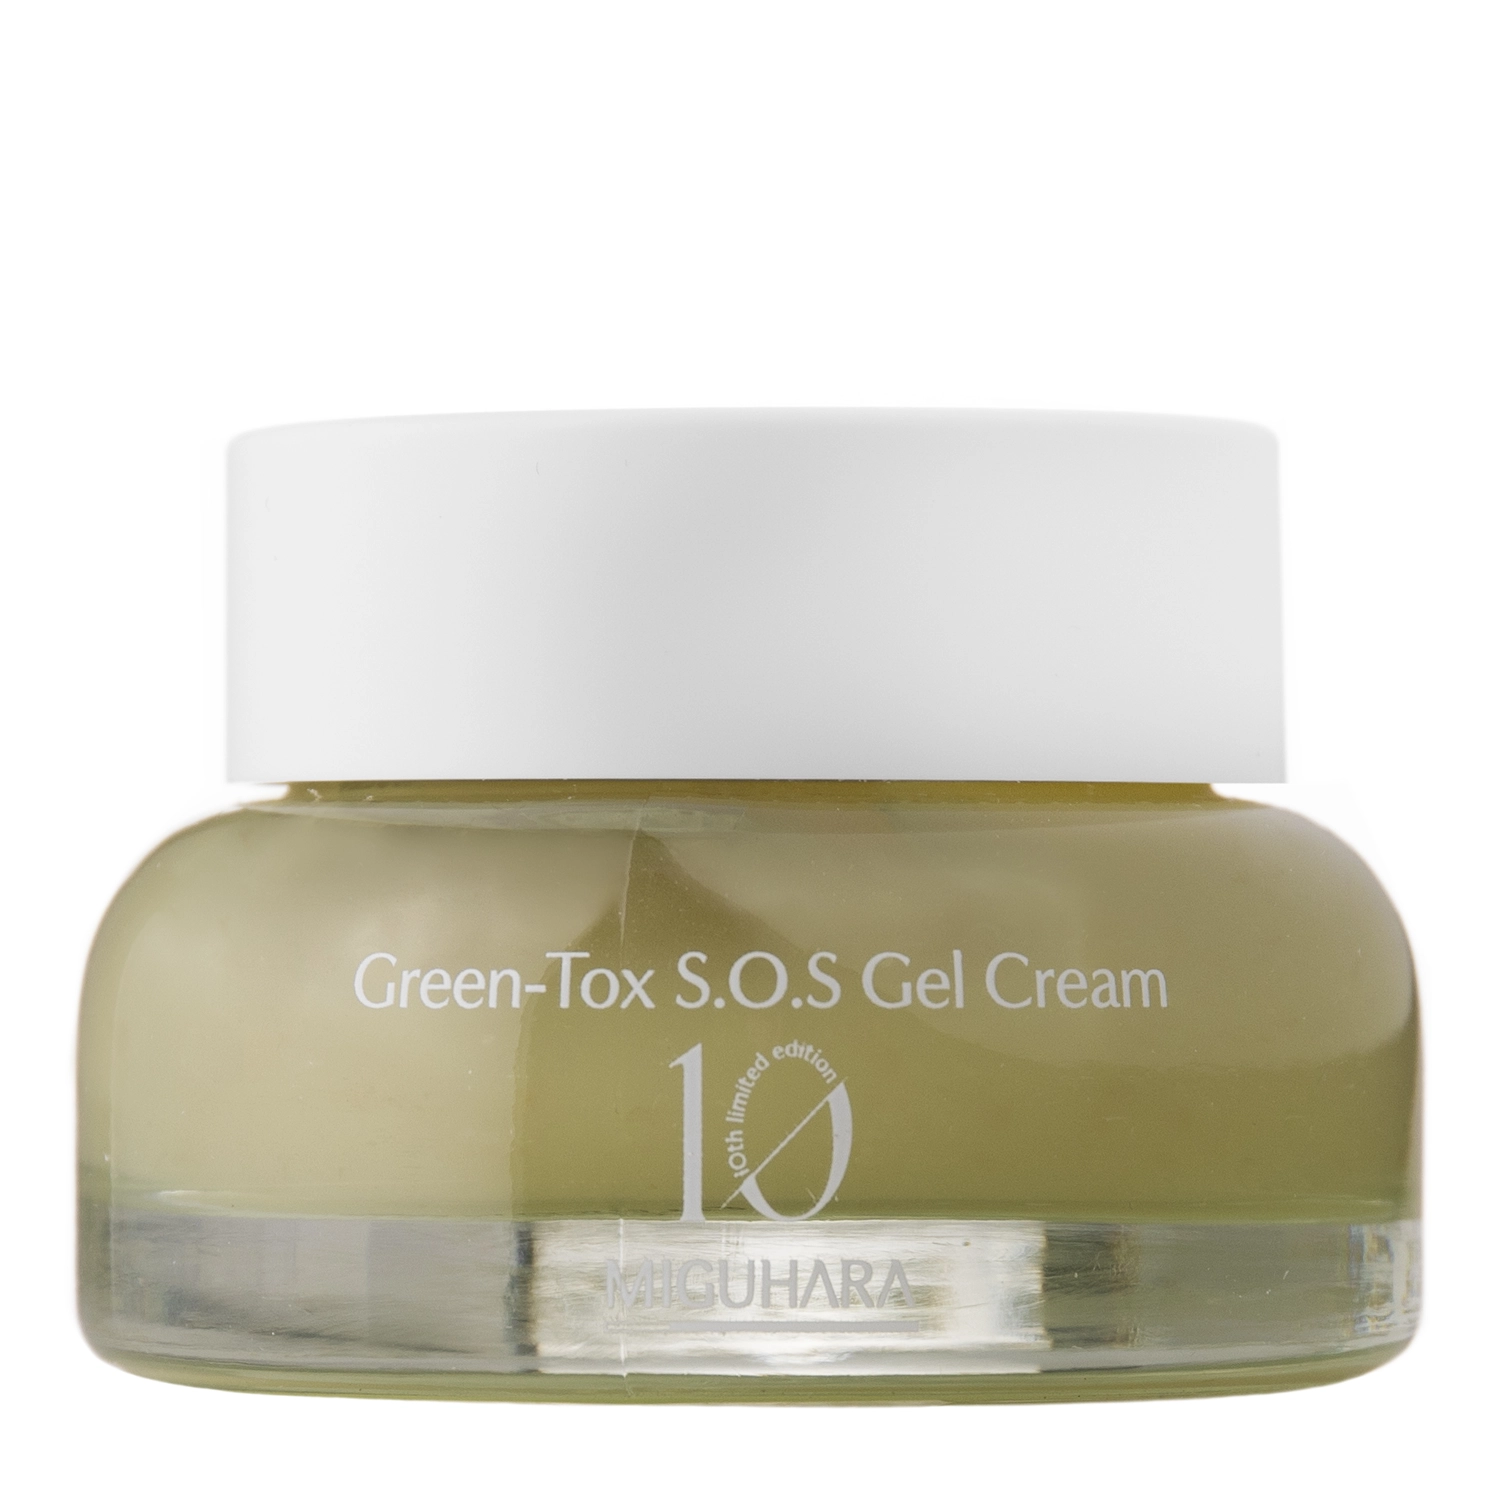 Miguhara - Green-Tox S.O.S Gel Cream - Krem-Żel do Twarzy z Ekstraktem z Zielonej Herbaty Jeju - 50ml